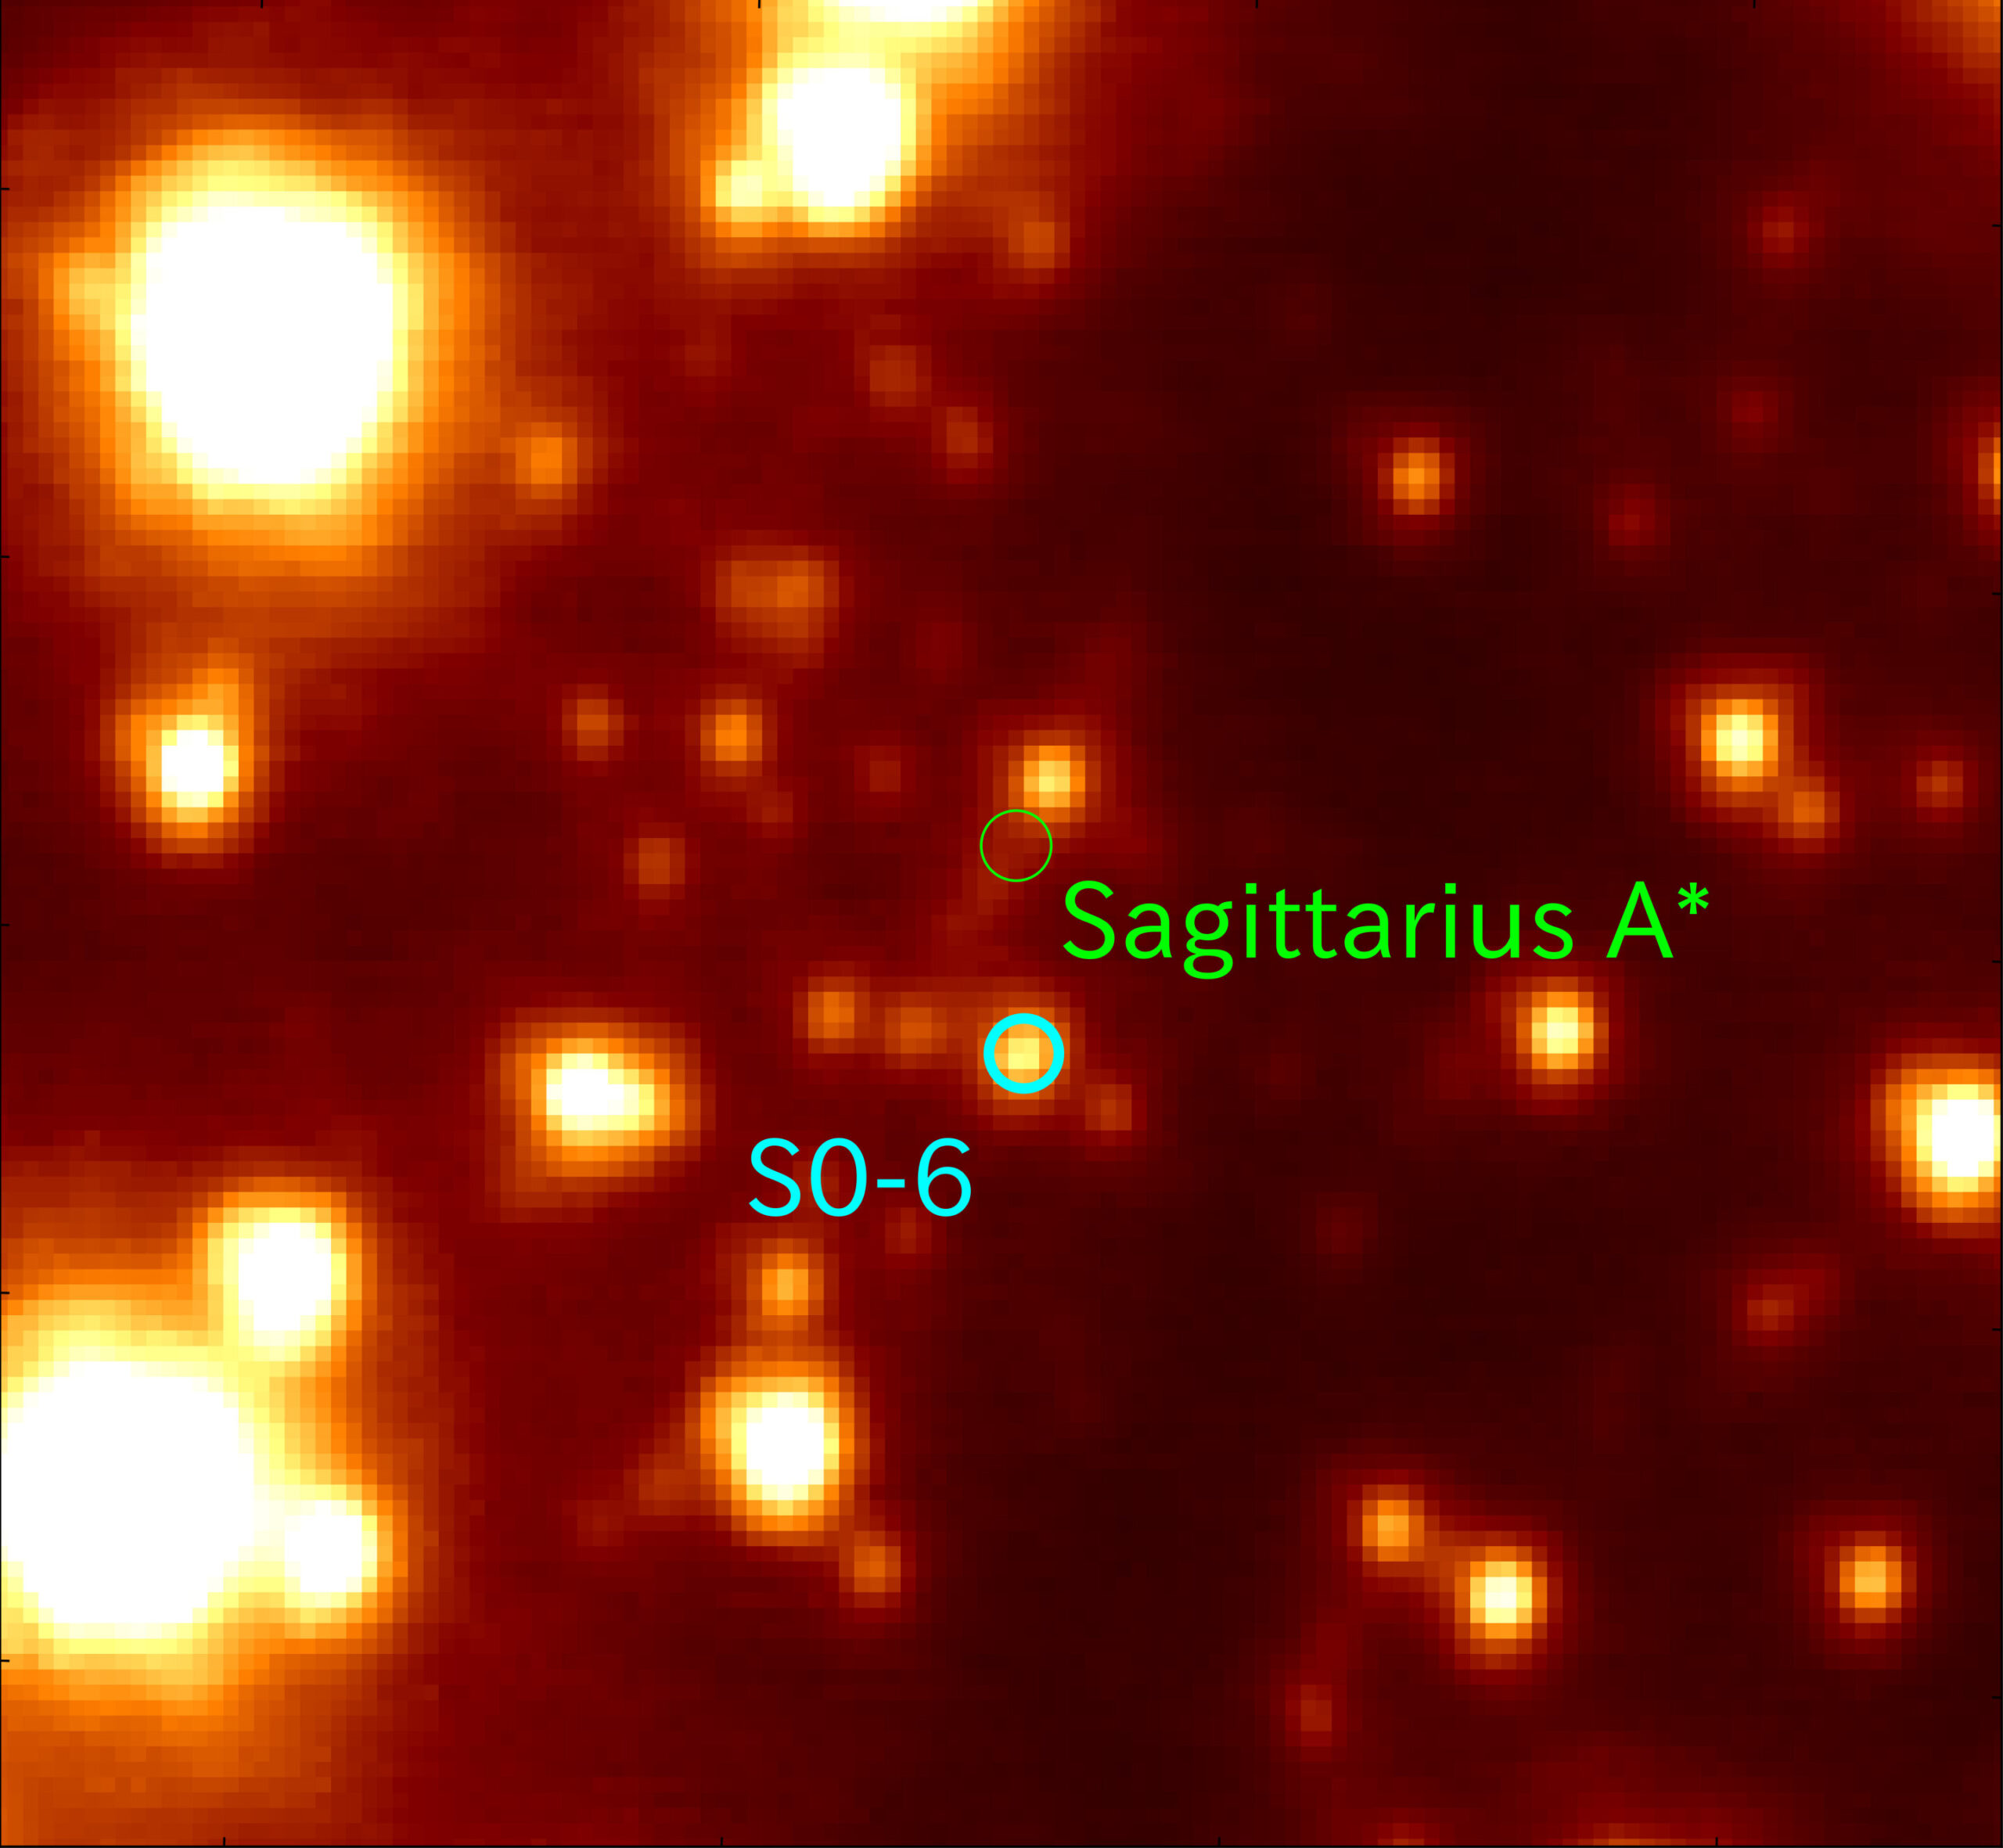 Зірка S0-6 (синє коло) розташована на відстані близько 0,04 світлових років від надмасивної чорної діри Стрільця A*.